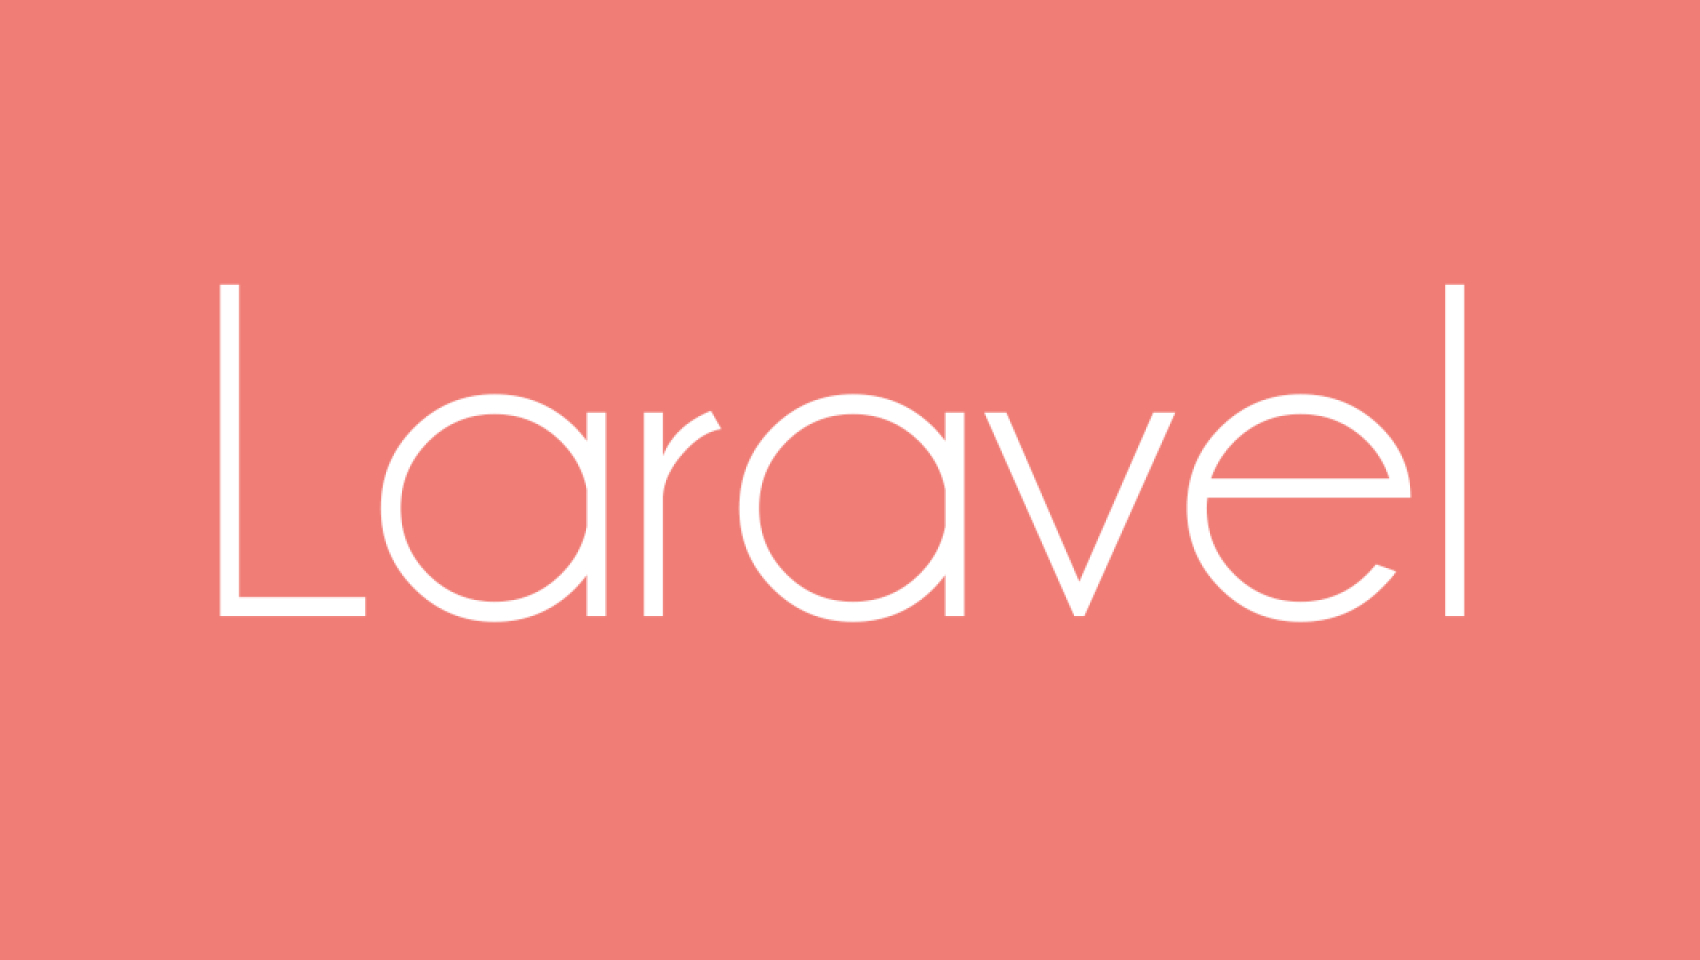 Створення простого інтернет-магазину з використанням фреймворку Laravel 5